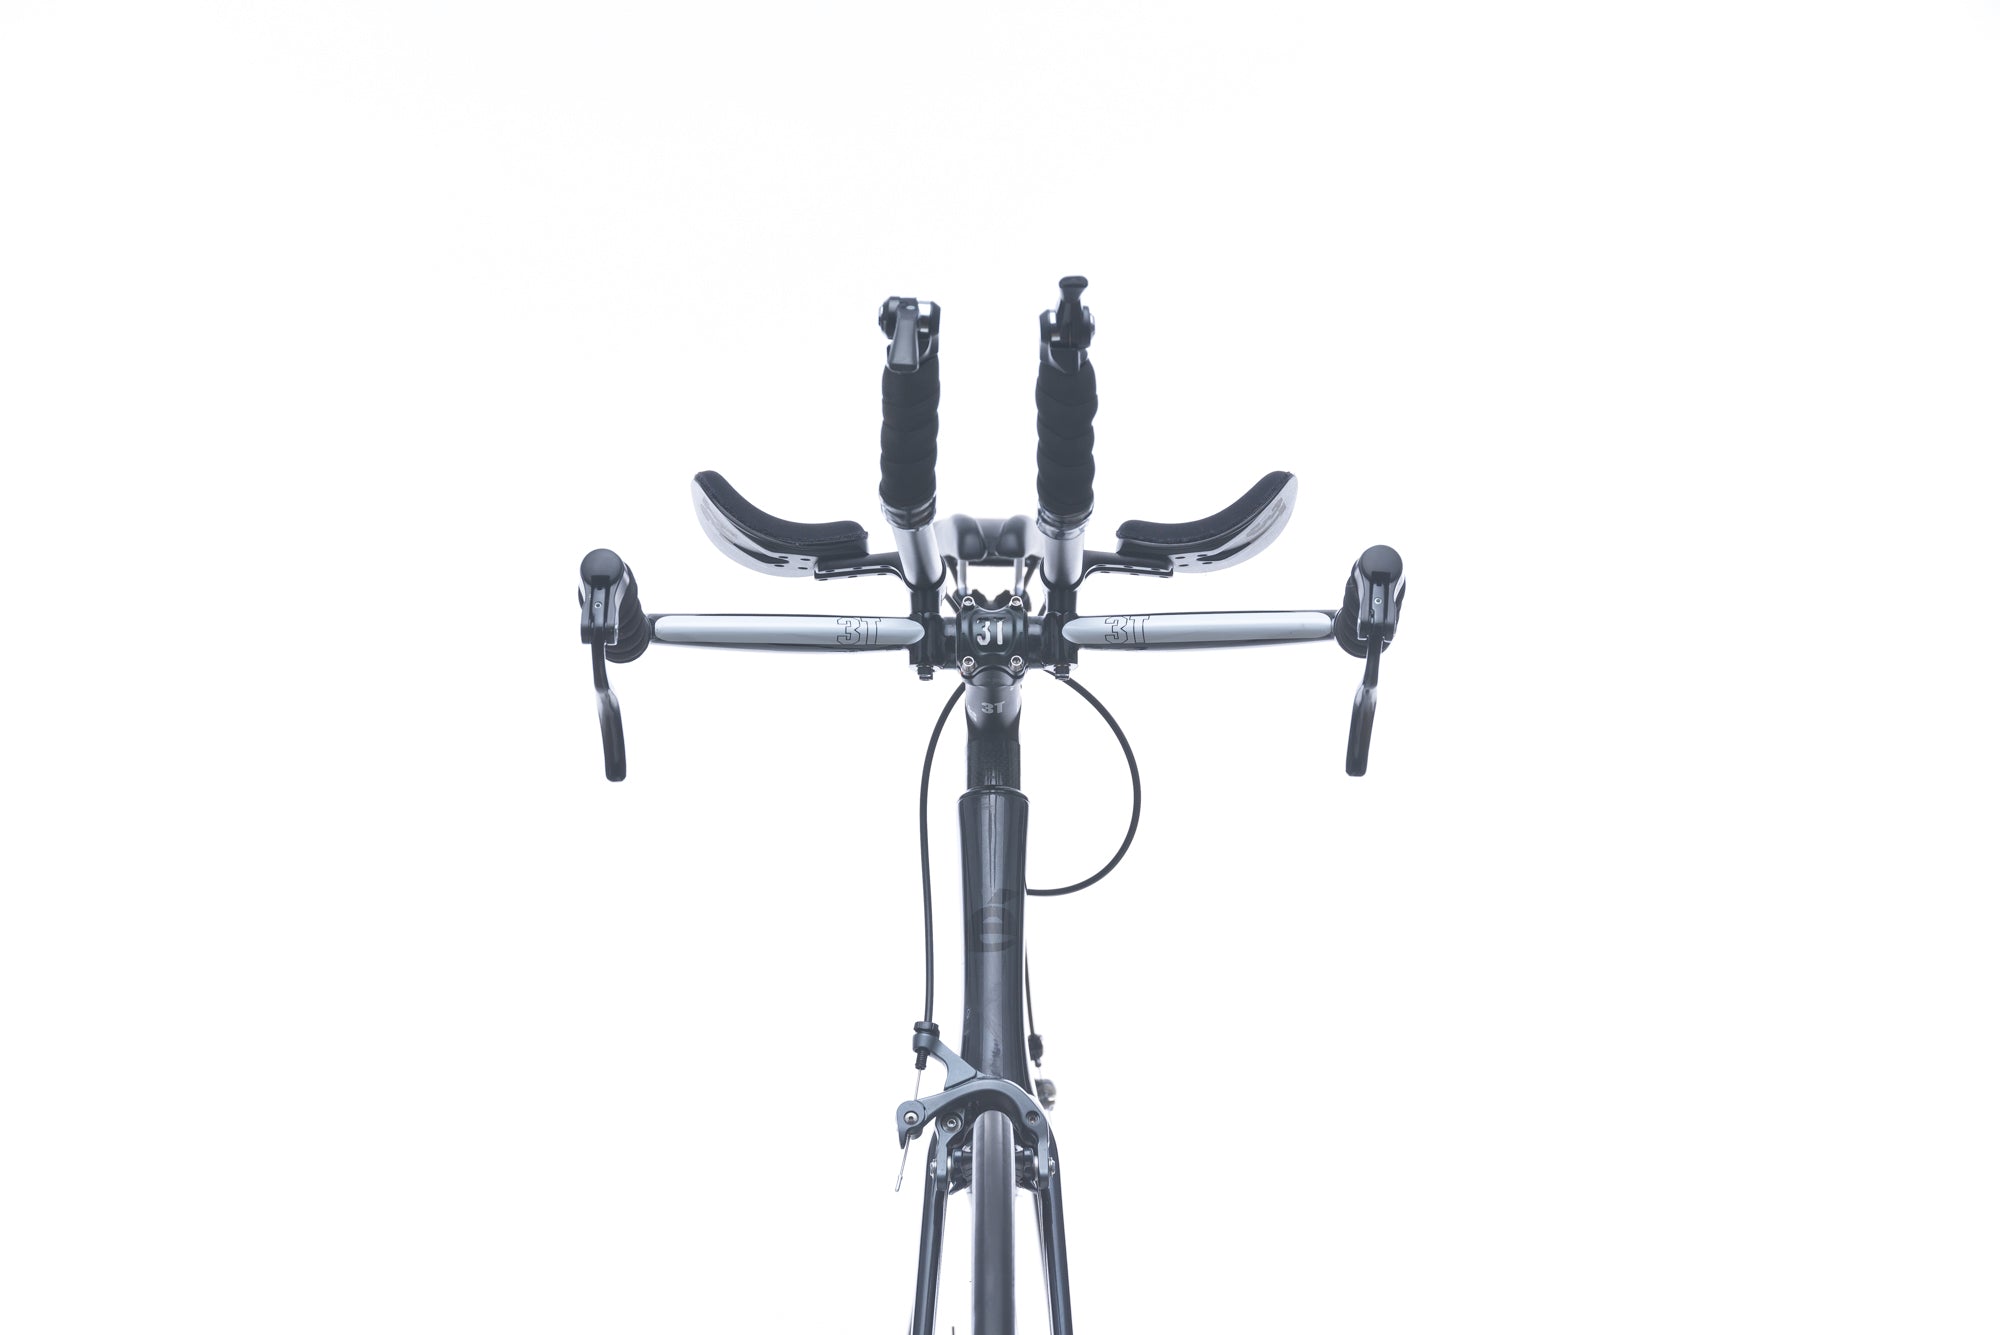 Cervelo P3 Ultegra 61cm Bike - 2015 front wheel